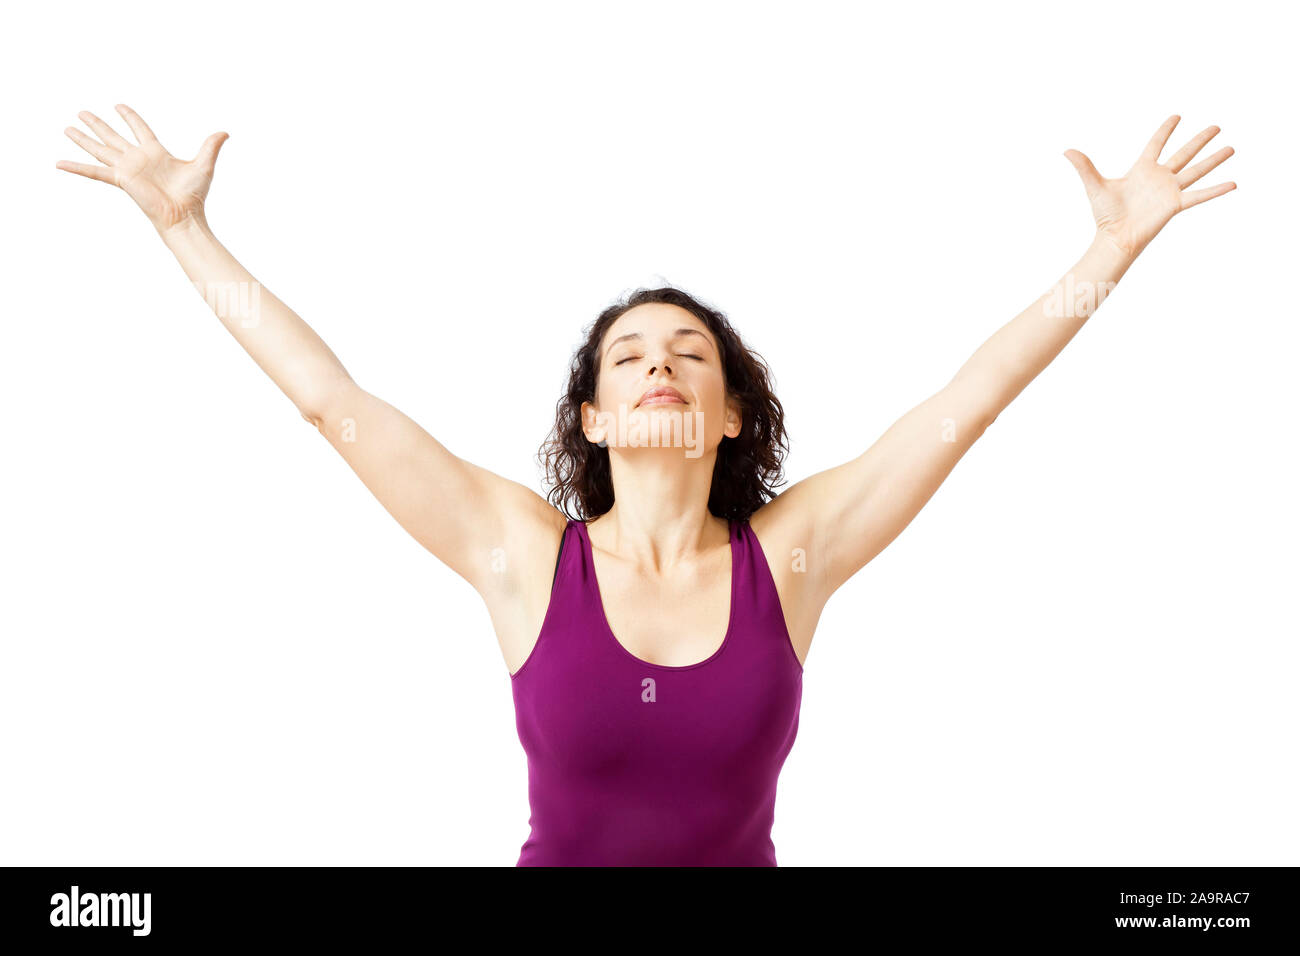 Eine huebsche Frau, die auf einer Isomatte Yoga-Uebungen durchfuehrt Stock Photo